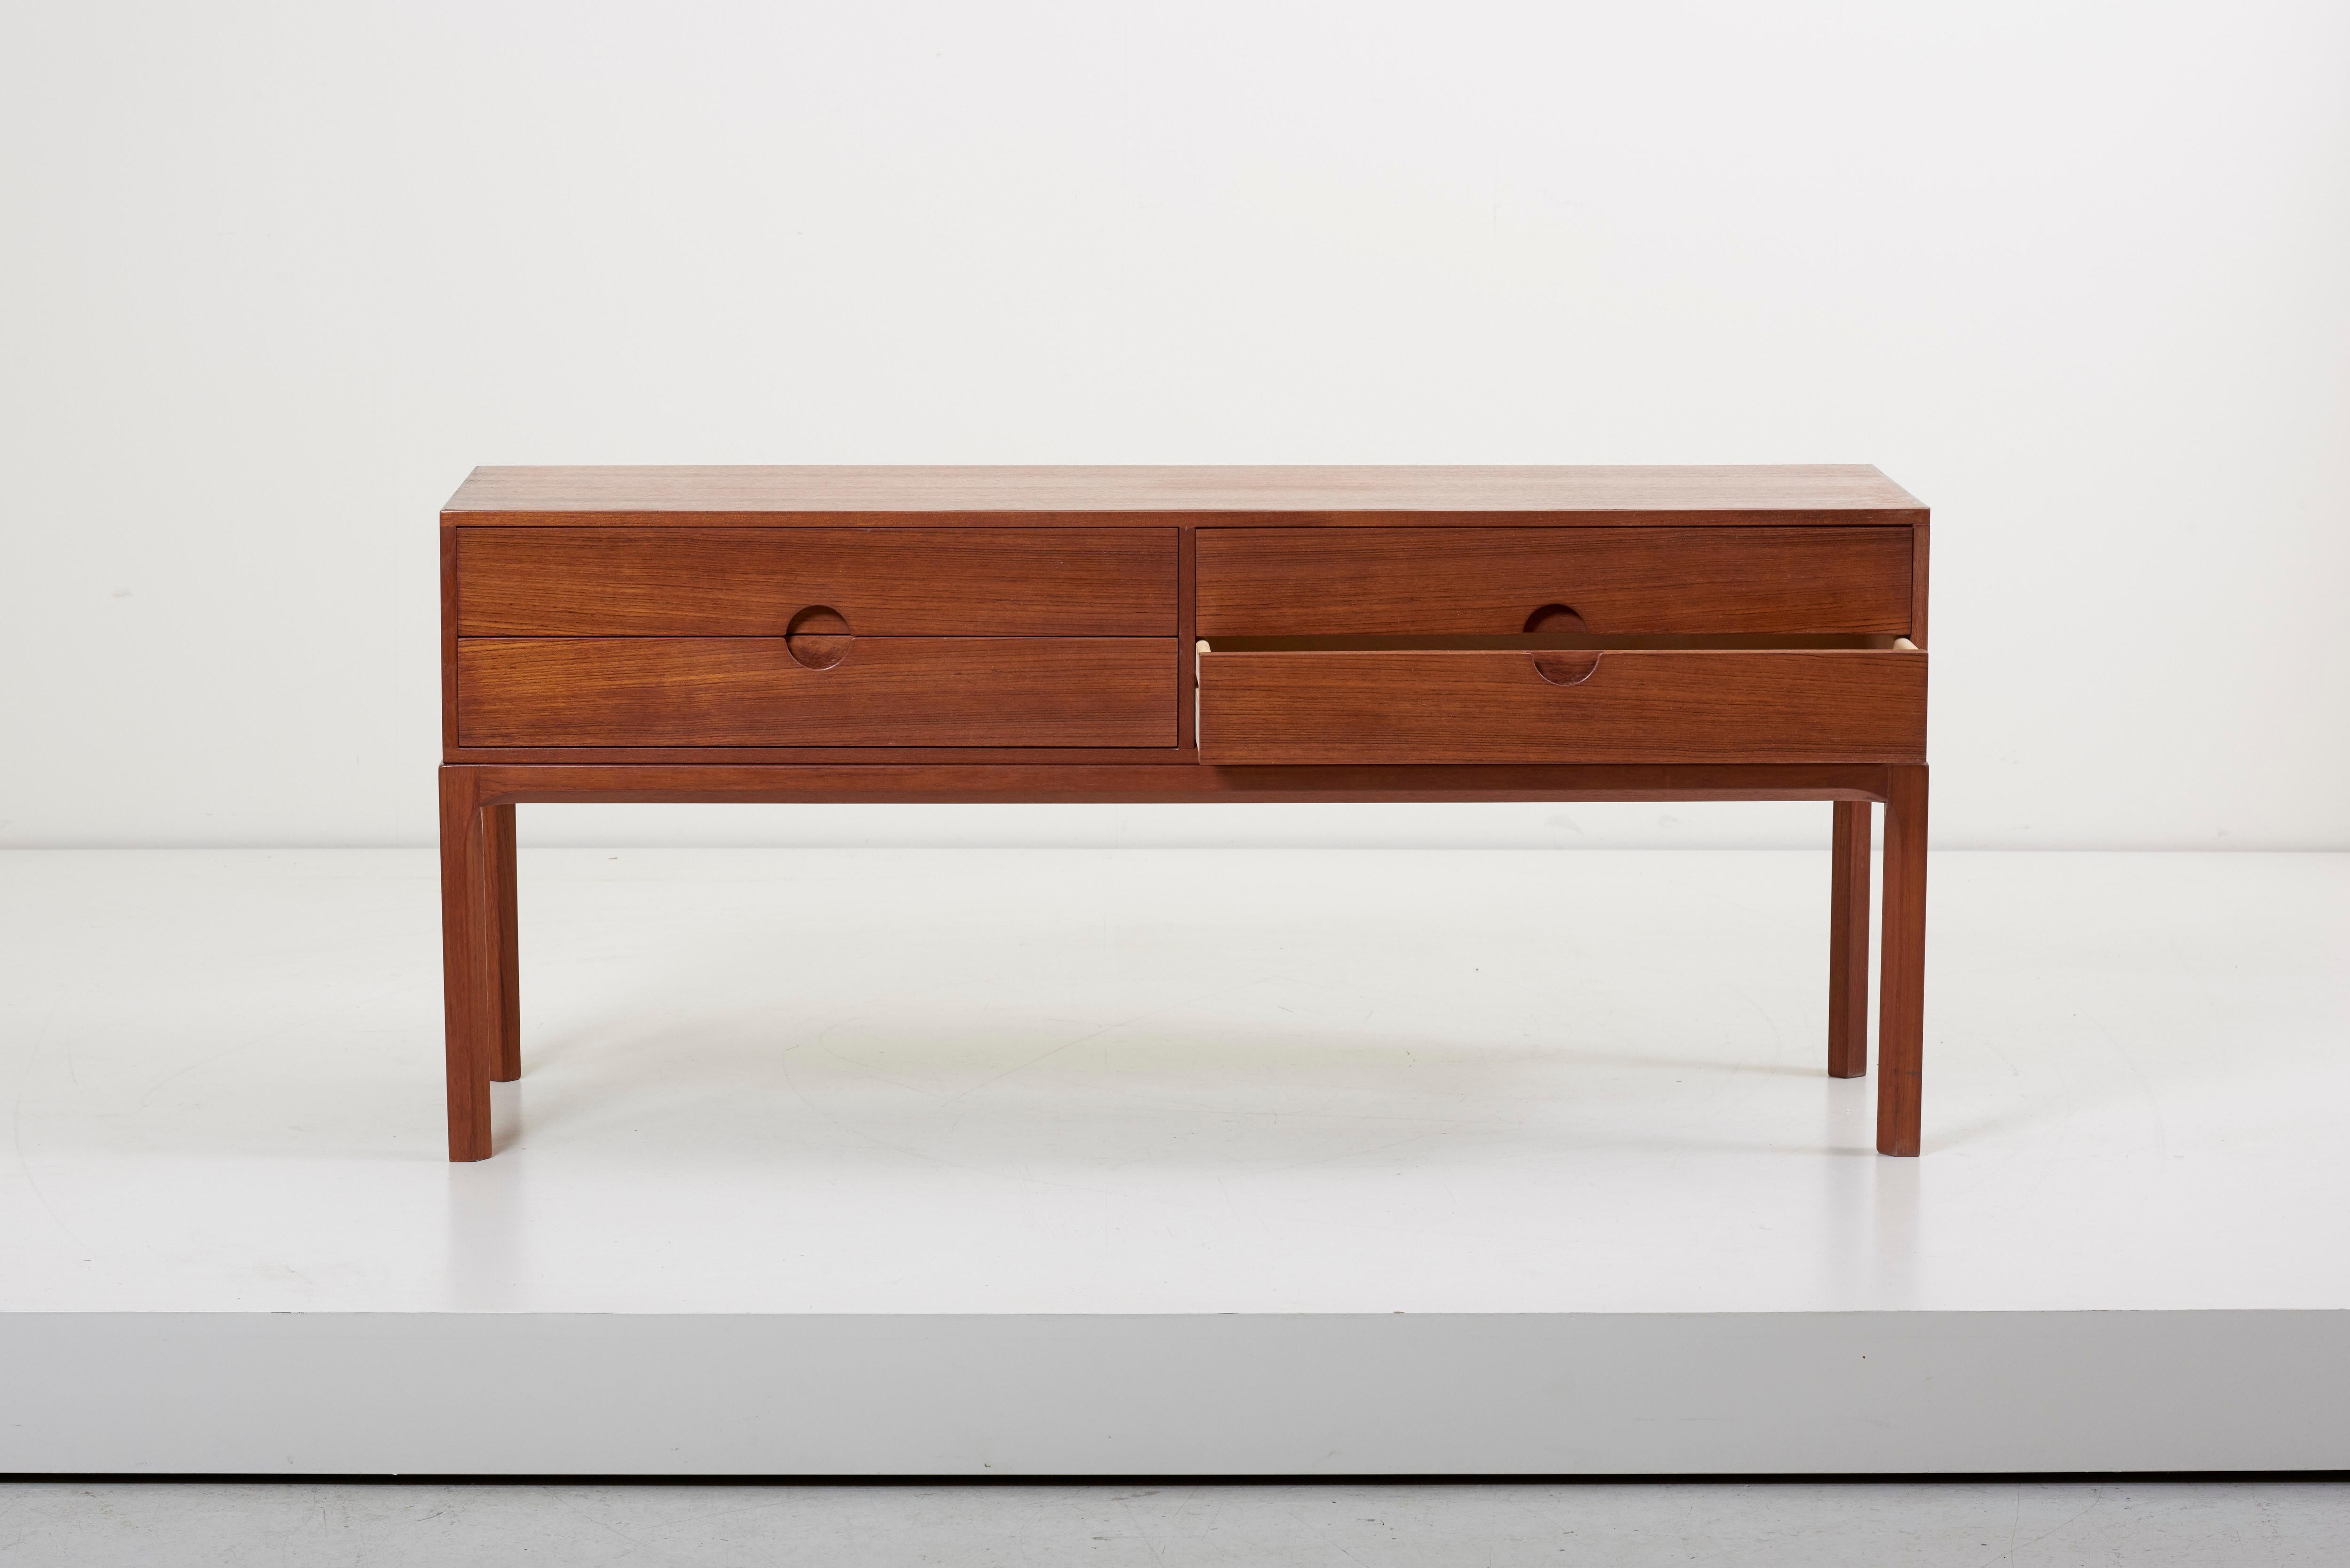 Wood Chest of drawers #1394 in Teak by Kai Kristiansen for Aksel Kjersgaard, Denmark